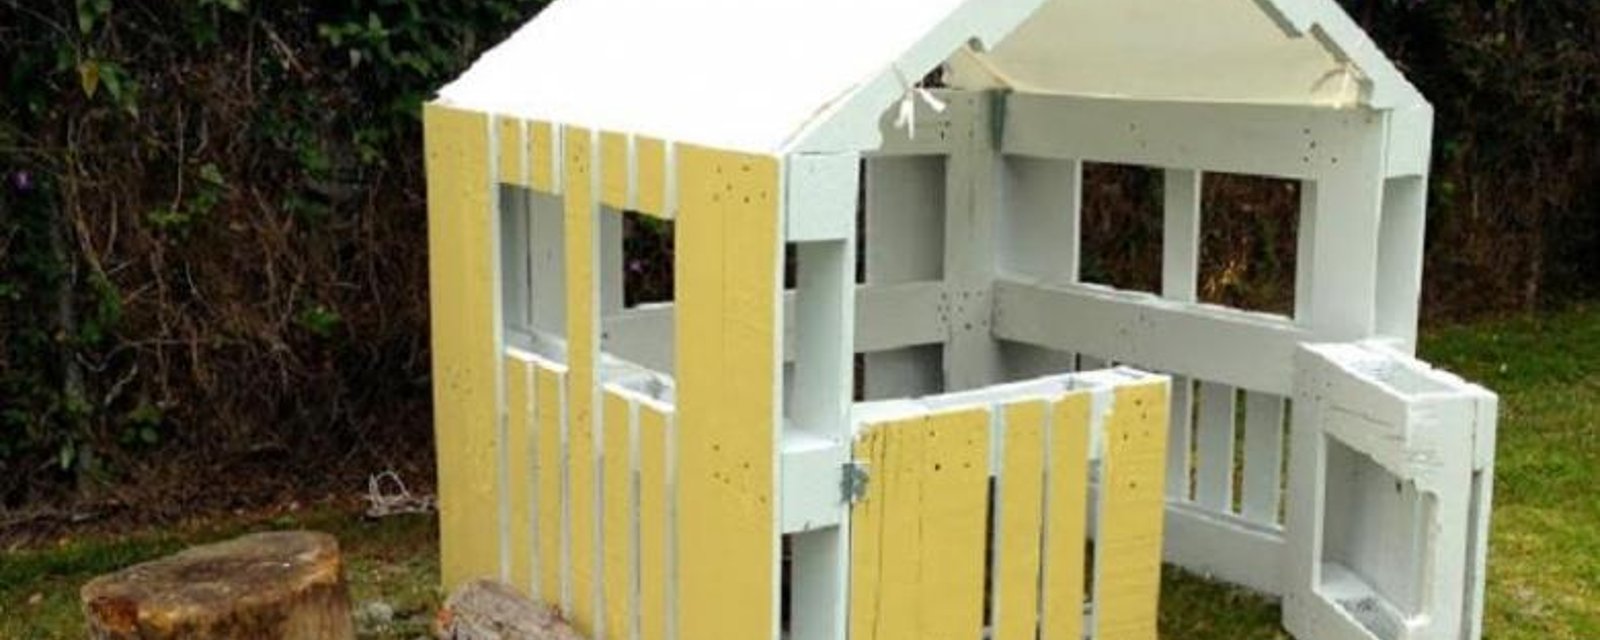 Construire une maison pour enfant, à partir de palettes de bois!